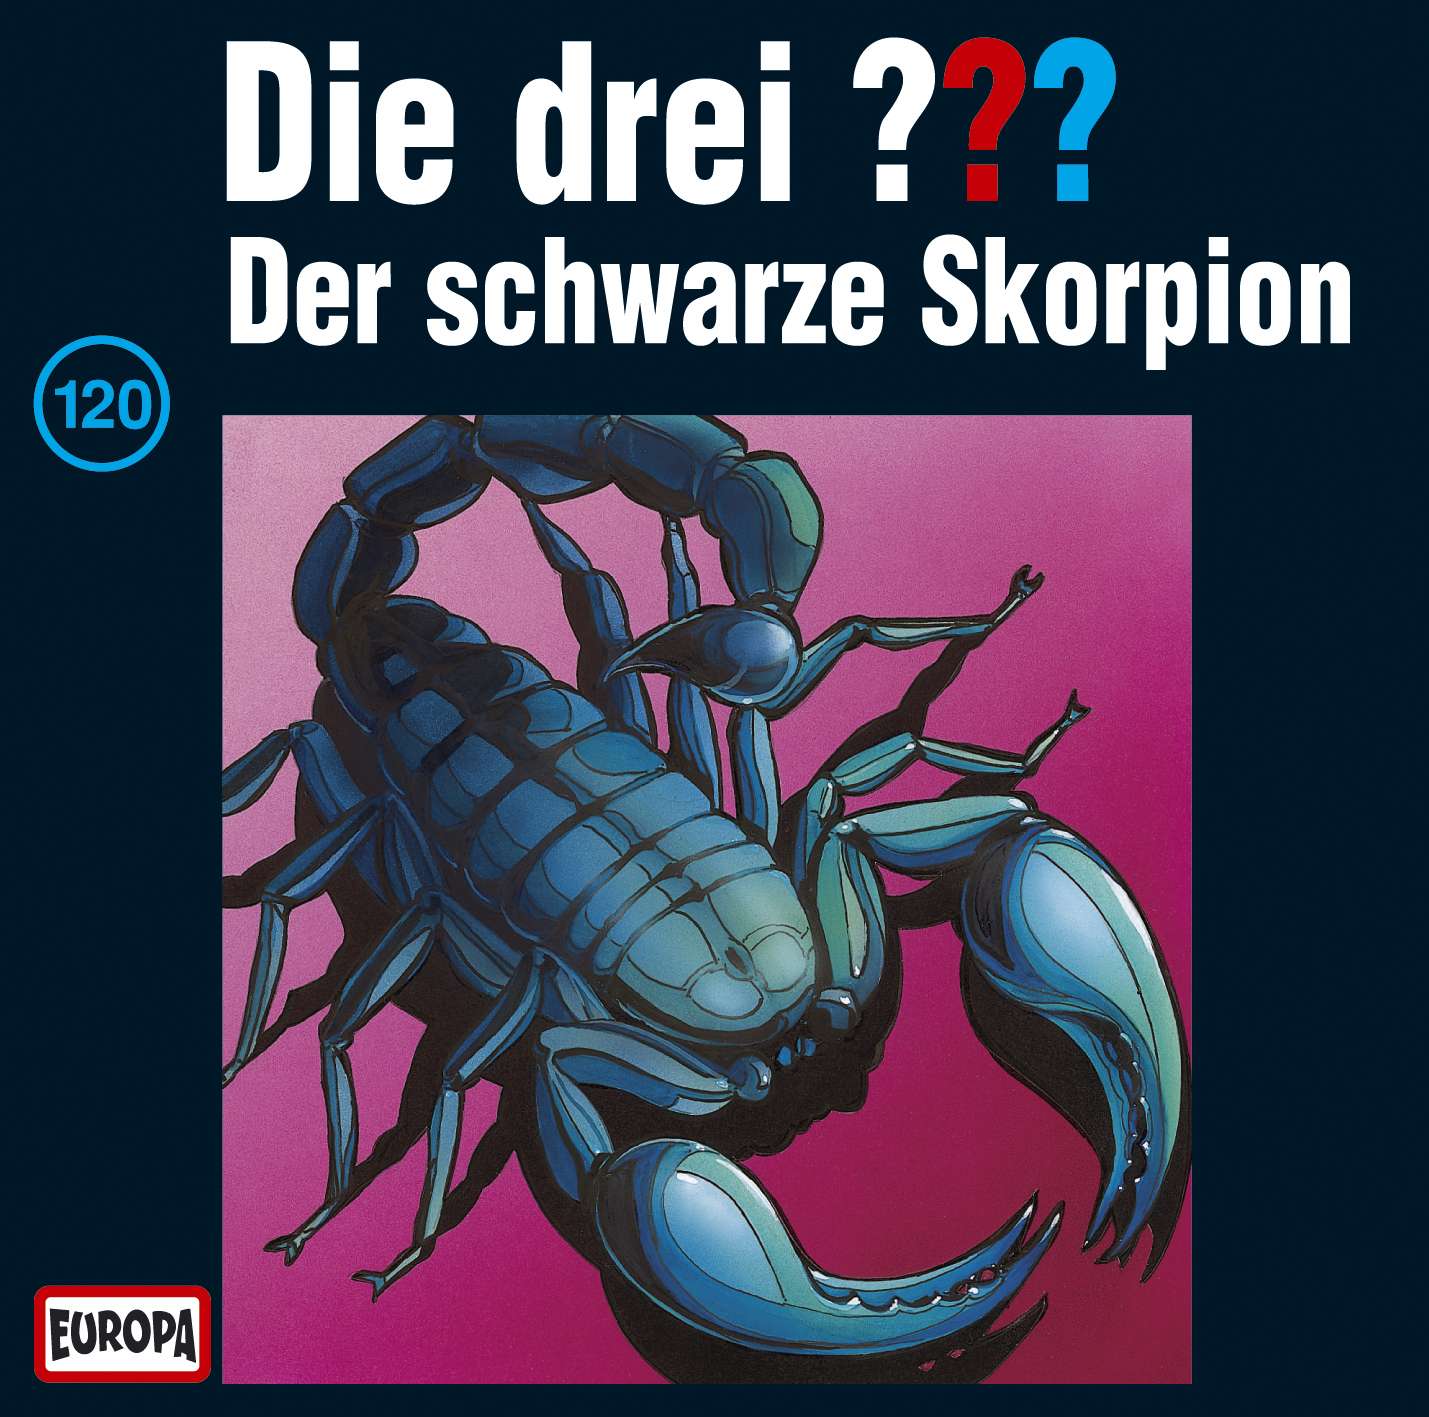 Die drei ???: Der schwarze Skorpion